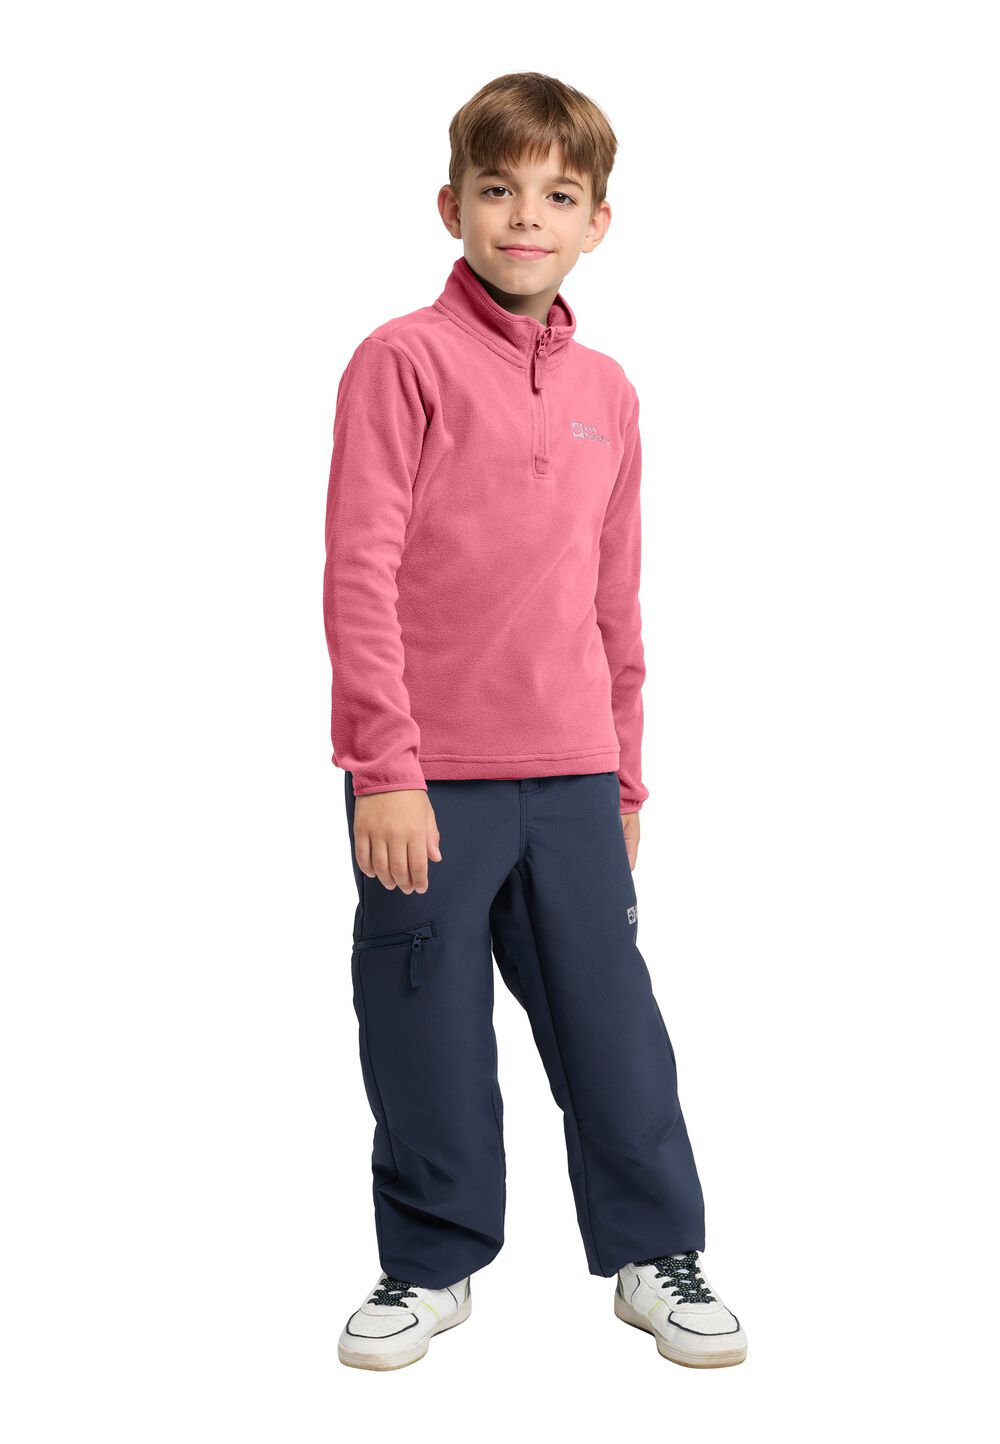 Jack Wolfskin Taunus Halfzip Kids Fleece trui Kinderen 128 soft pink soft pink